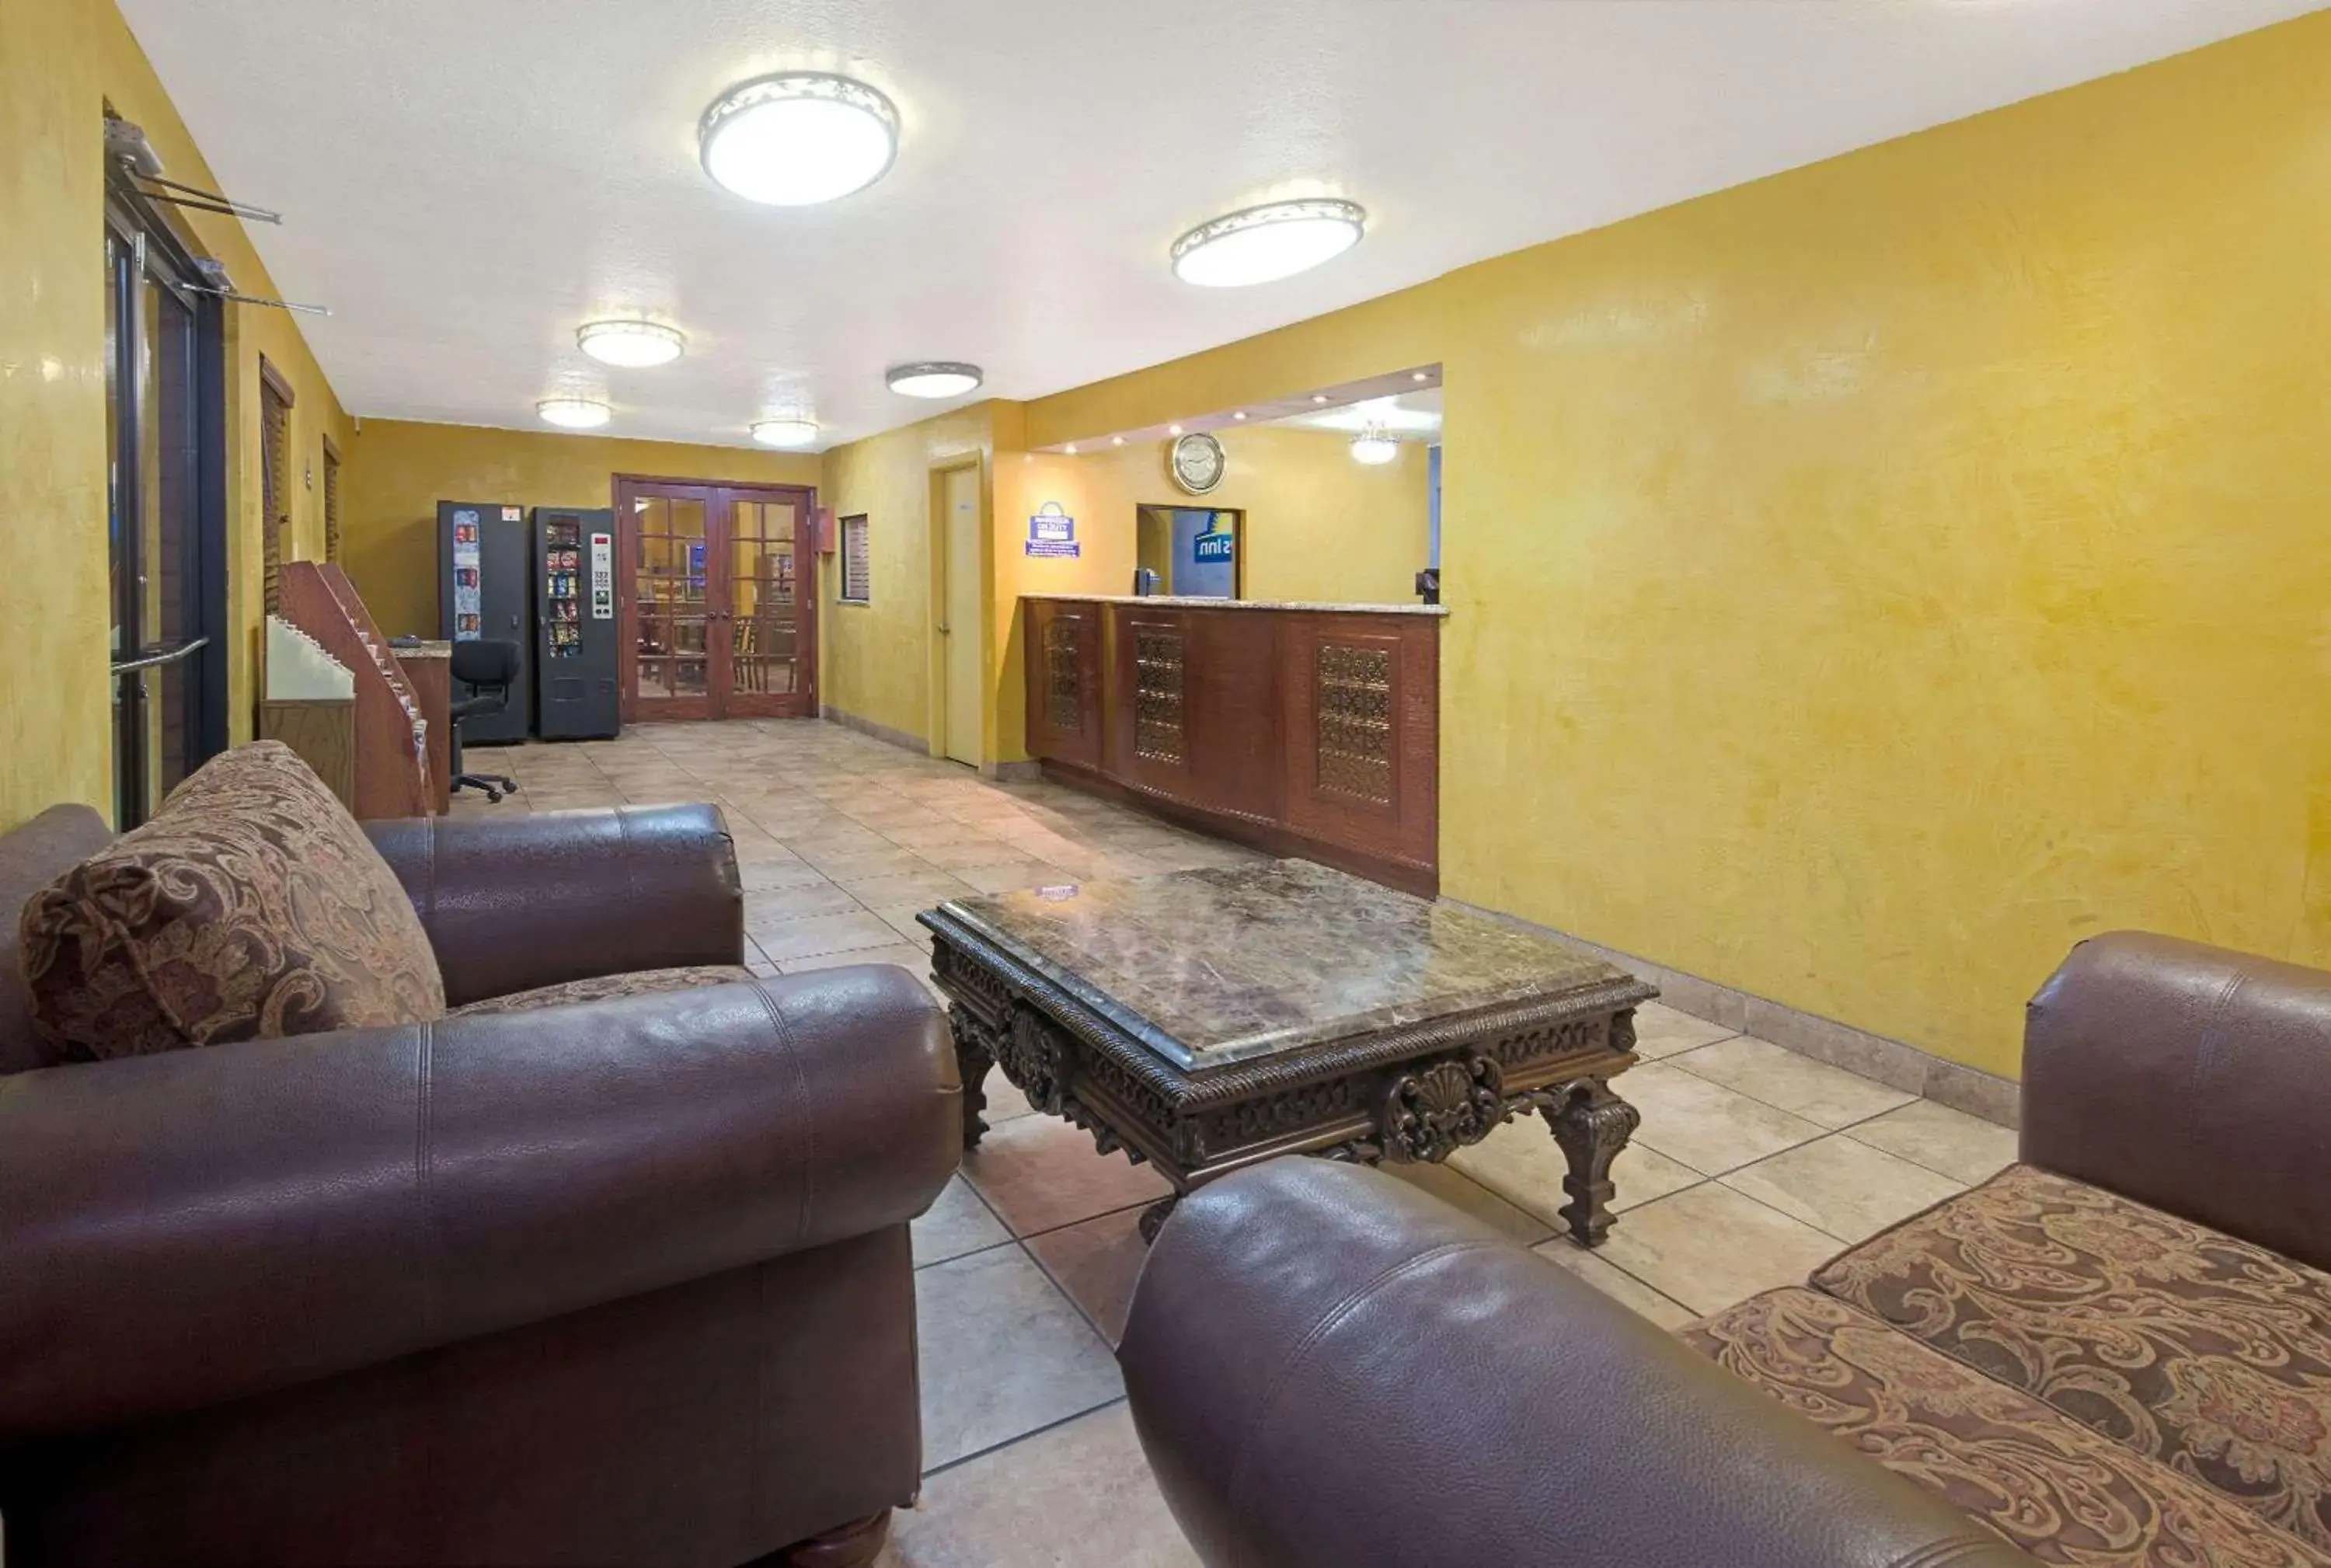 Lobby or reception, Lobby/Reception in Days Inn by Wyndham East Albuquerque